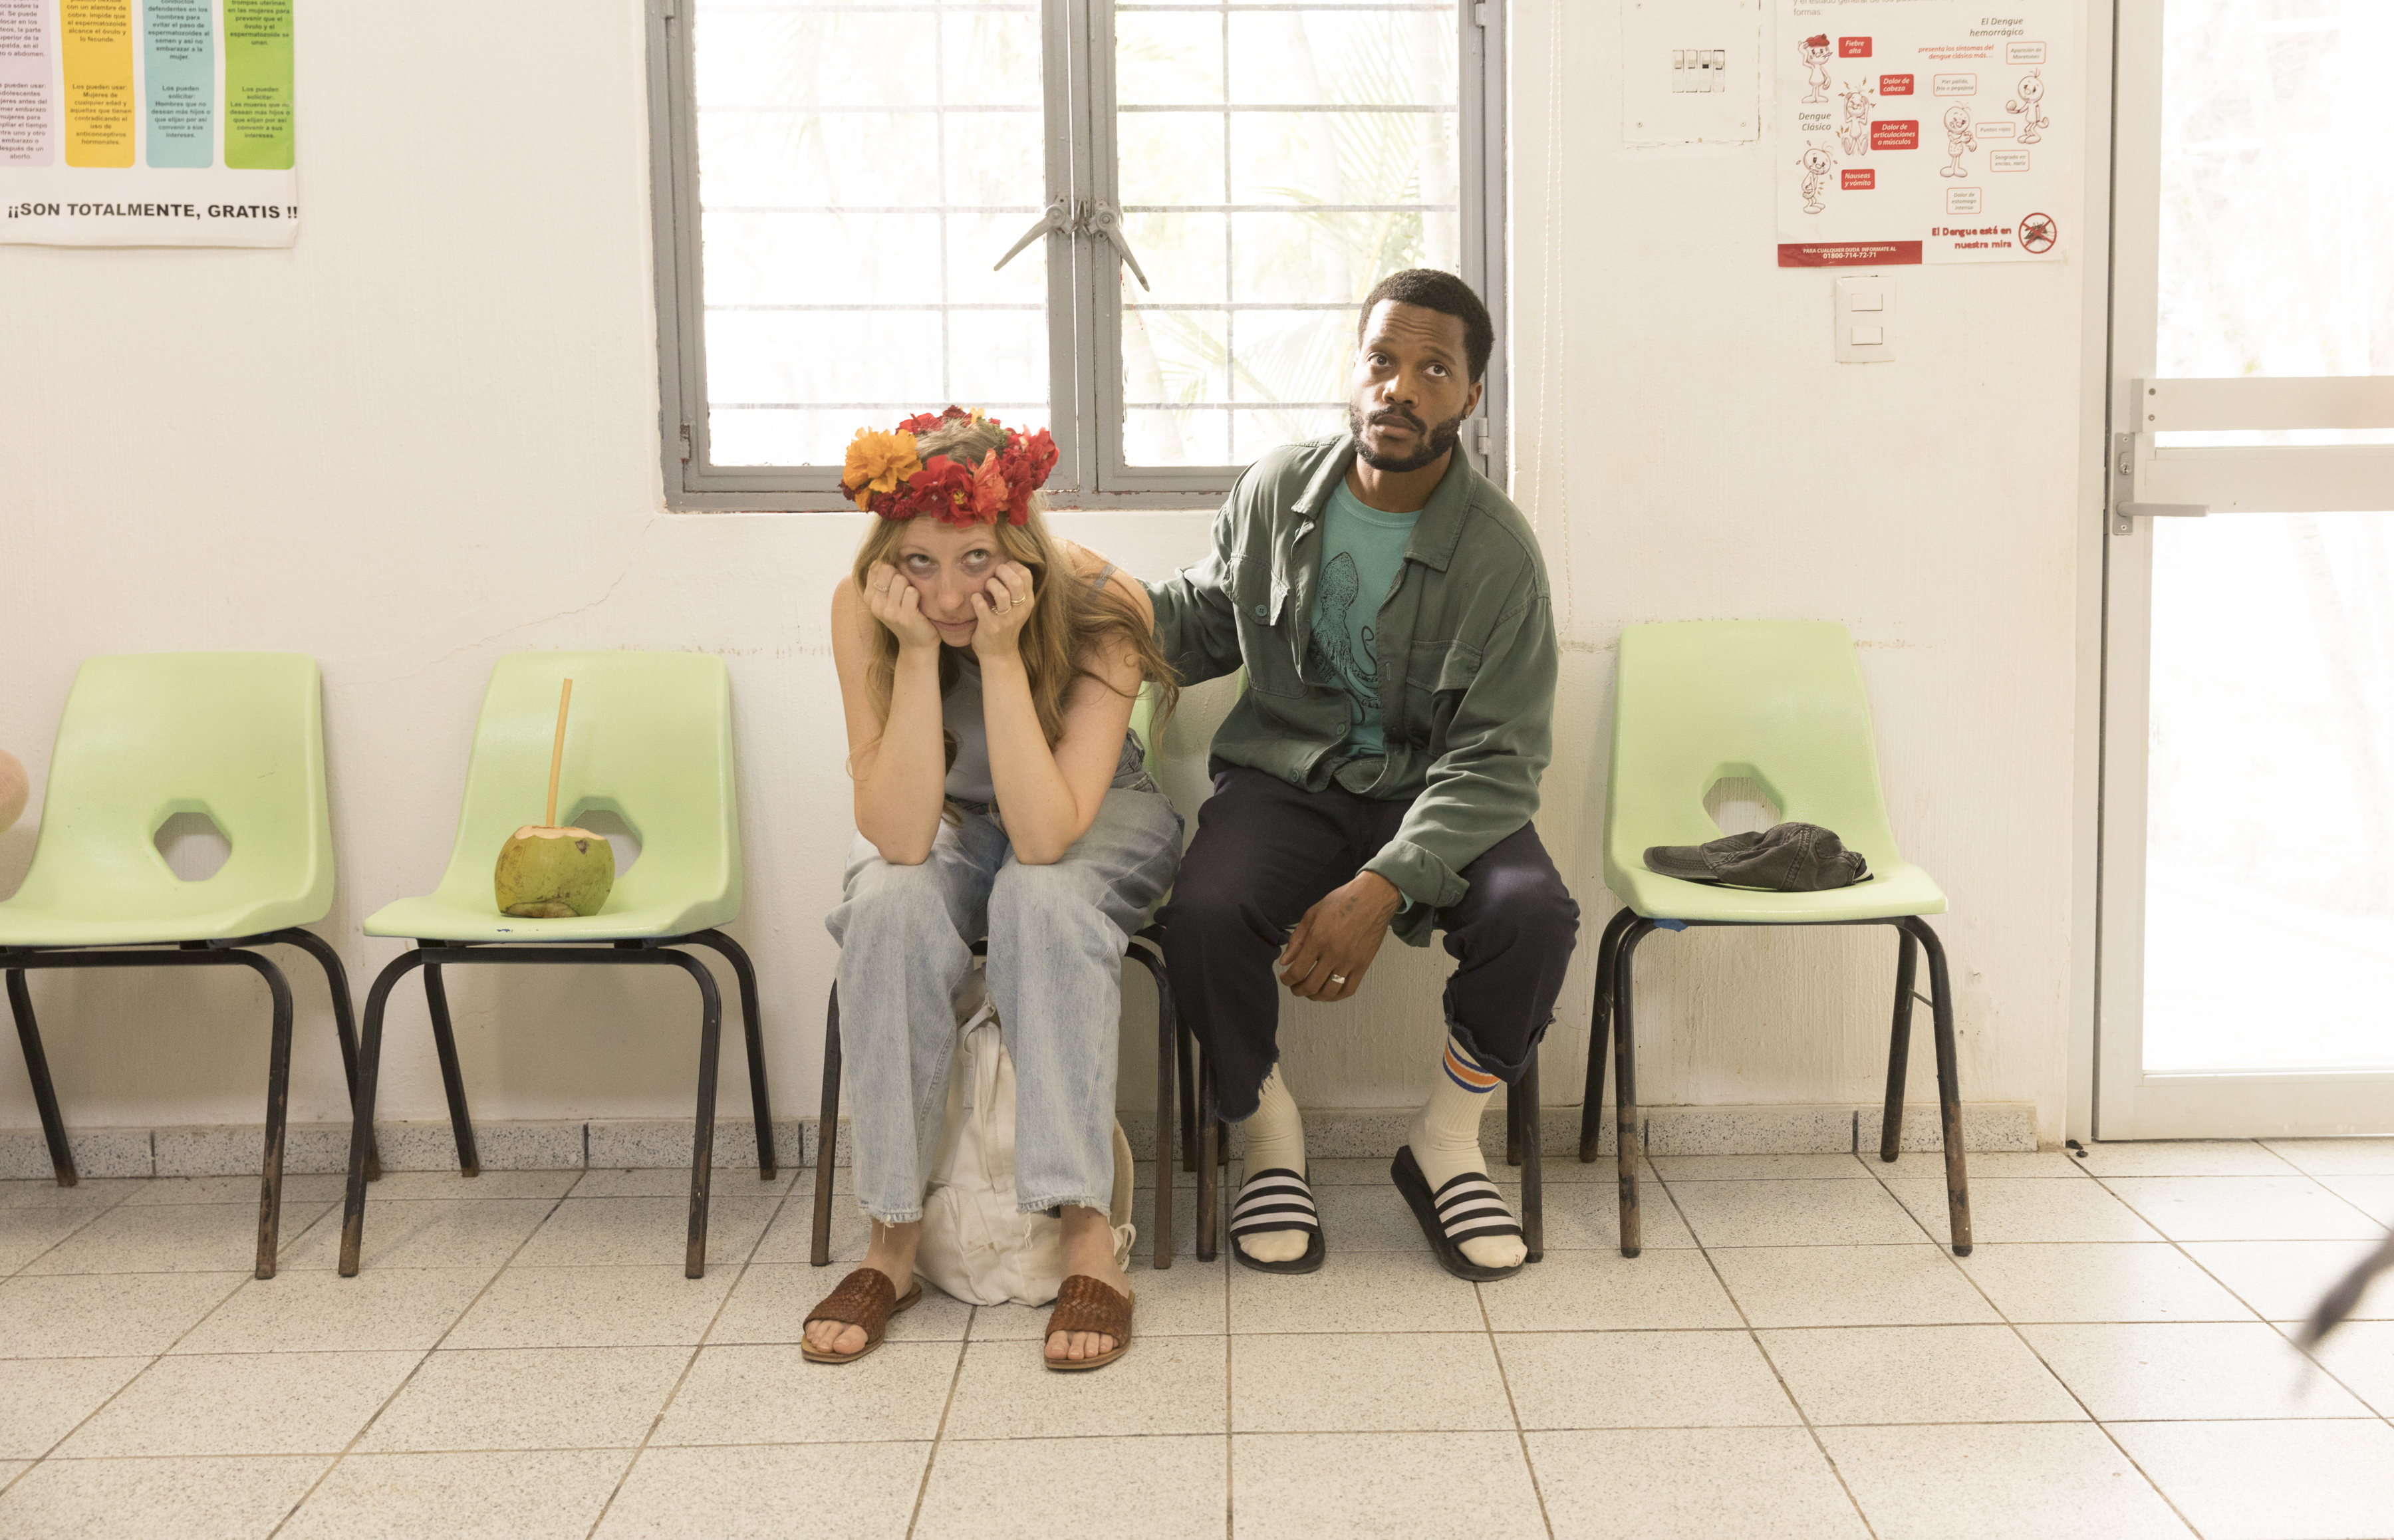 Anna Konkle e Jermaine Fowler sentam-se na sala de espera de um hospital durante uma cena de The Drop.